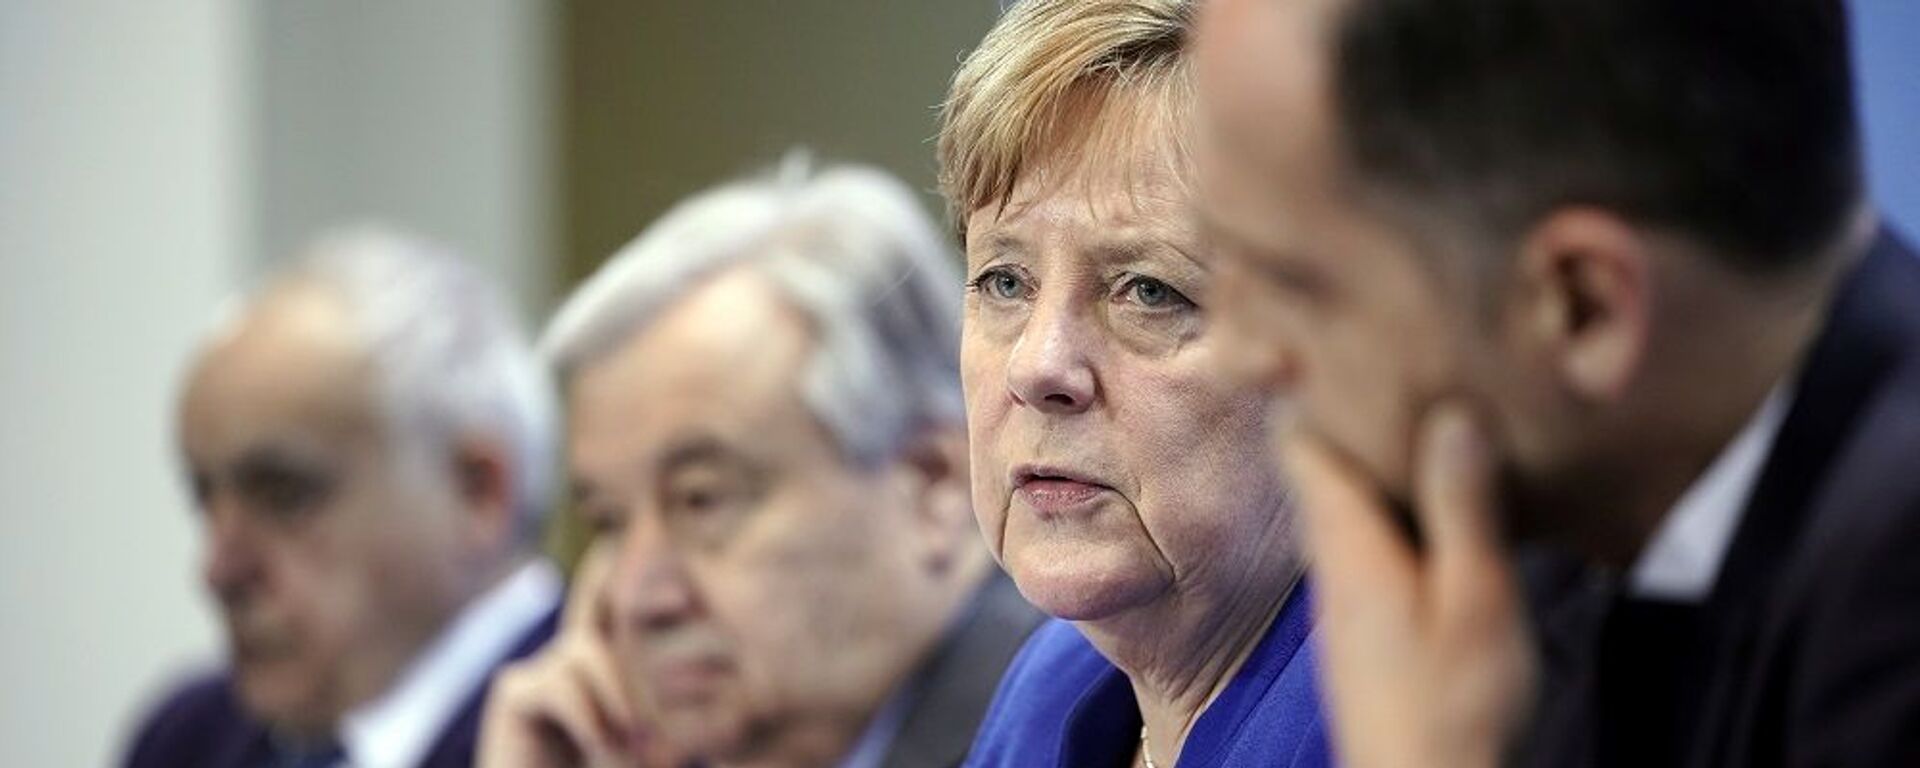 Berlin'deki Libya Konferansı (sırasıyla) BM Libya Temsilcisi Salame, BM Genel Sekreteri Guterres, Almanya Başbakanı Merkel, Almanya Dışişleri Bakanı Maas. - Sputnik Türkiye, 1920, 12.08.2021